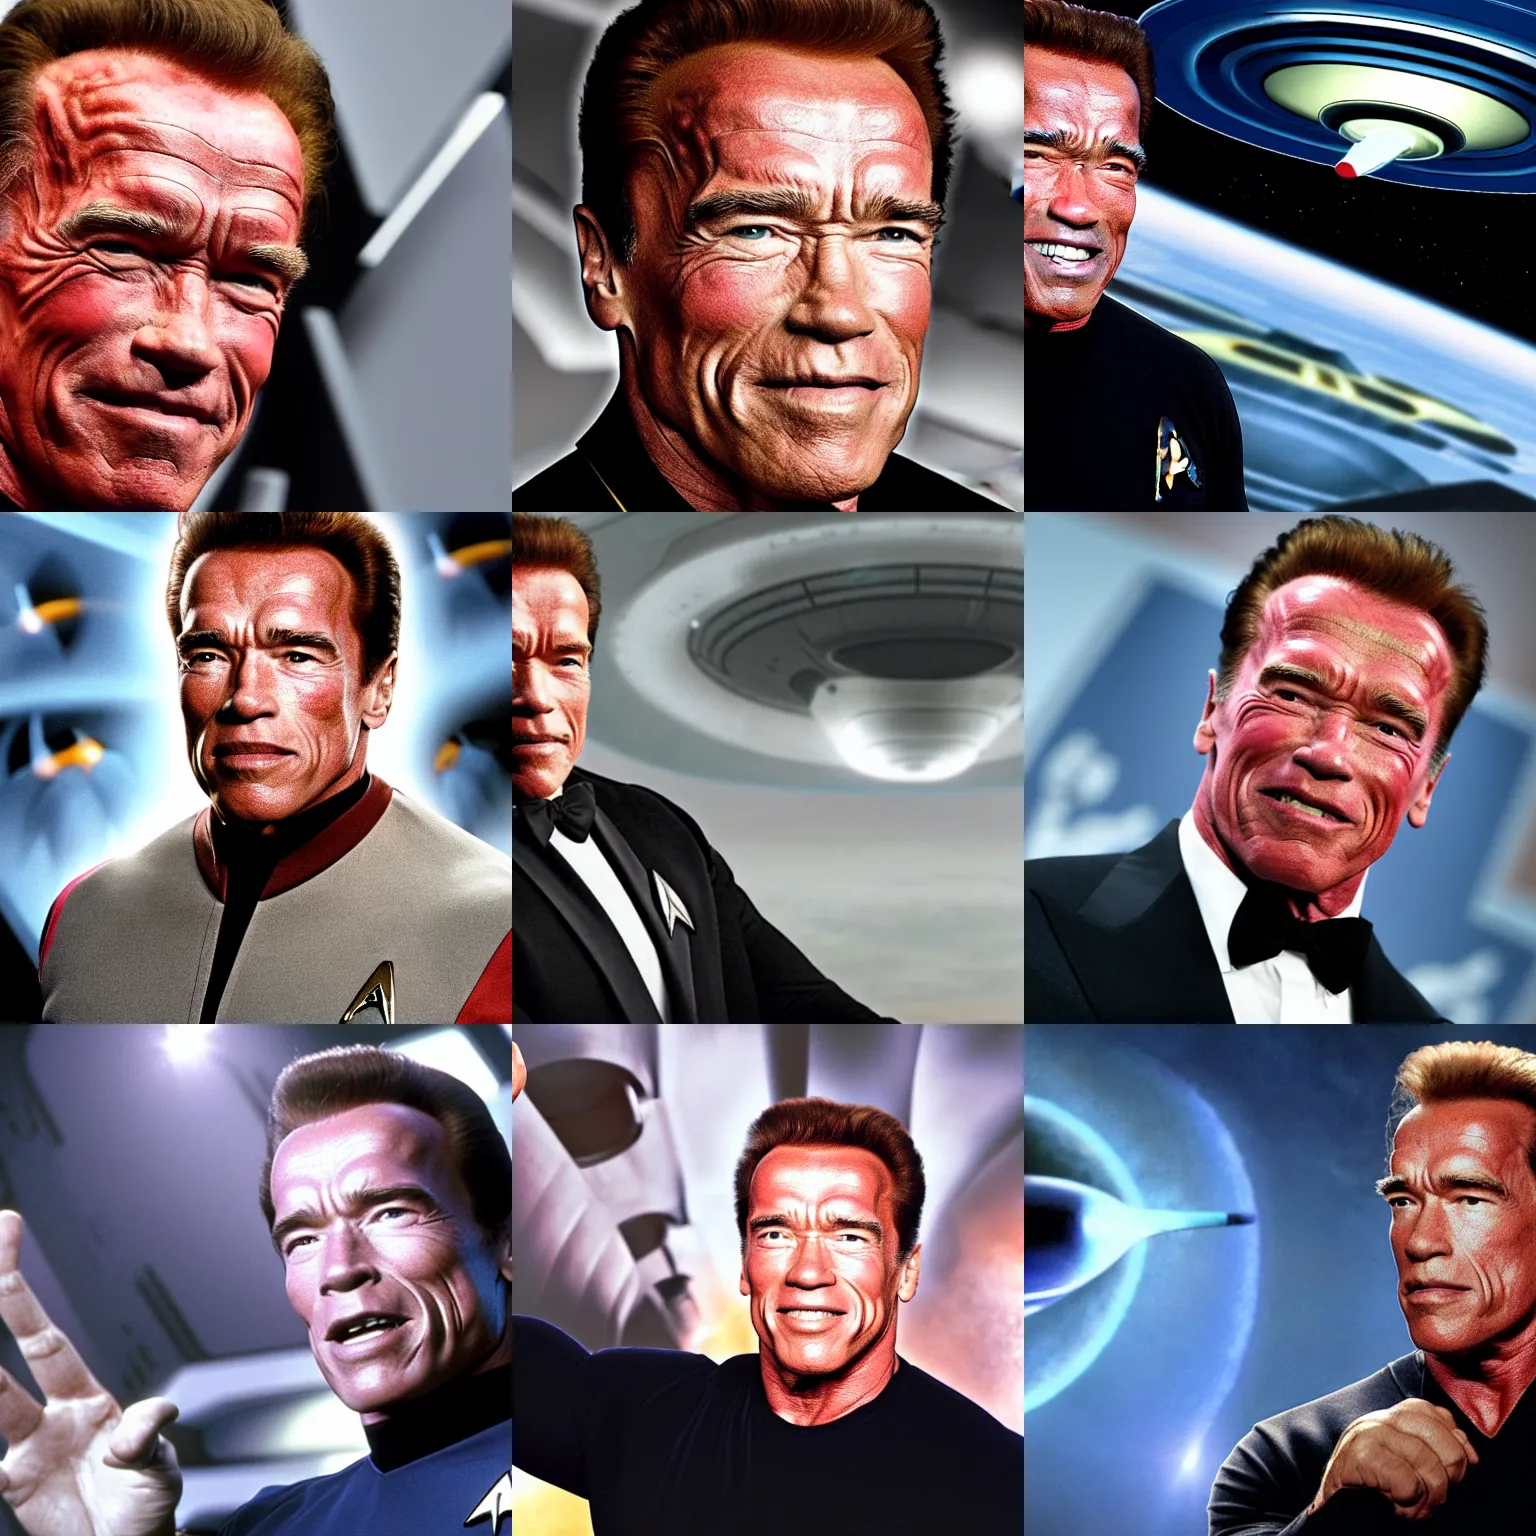 Prompt: Arnold Schwarzenegger is the captain of the starship Enterprise in the new Star Trek movie